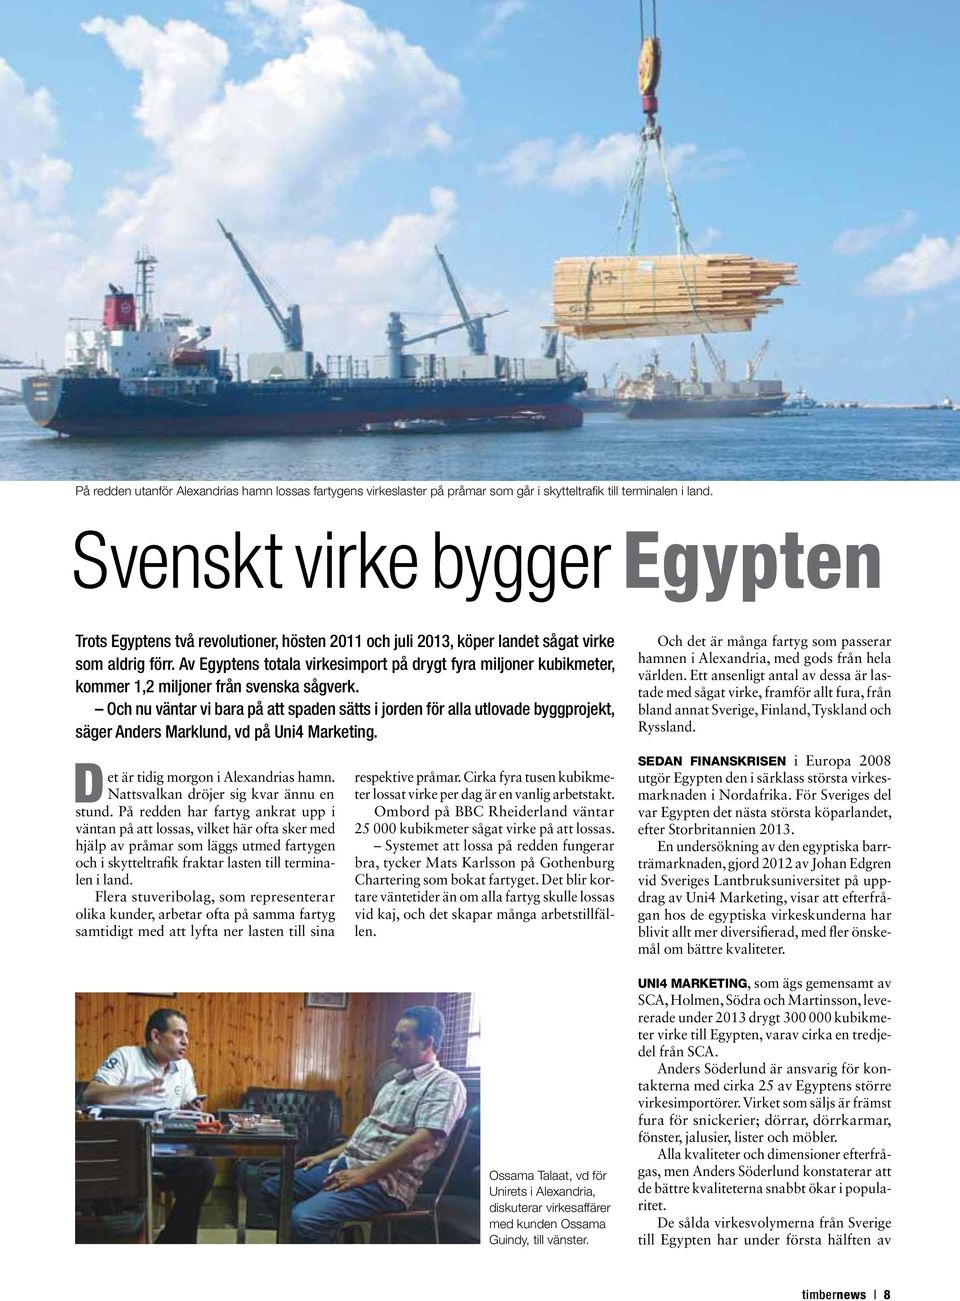 Av Egyptens totala virkesimport på drygt fyra miljoner kubikmeter, kommer 1,2 miljoner från svenska sågverk.